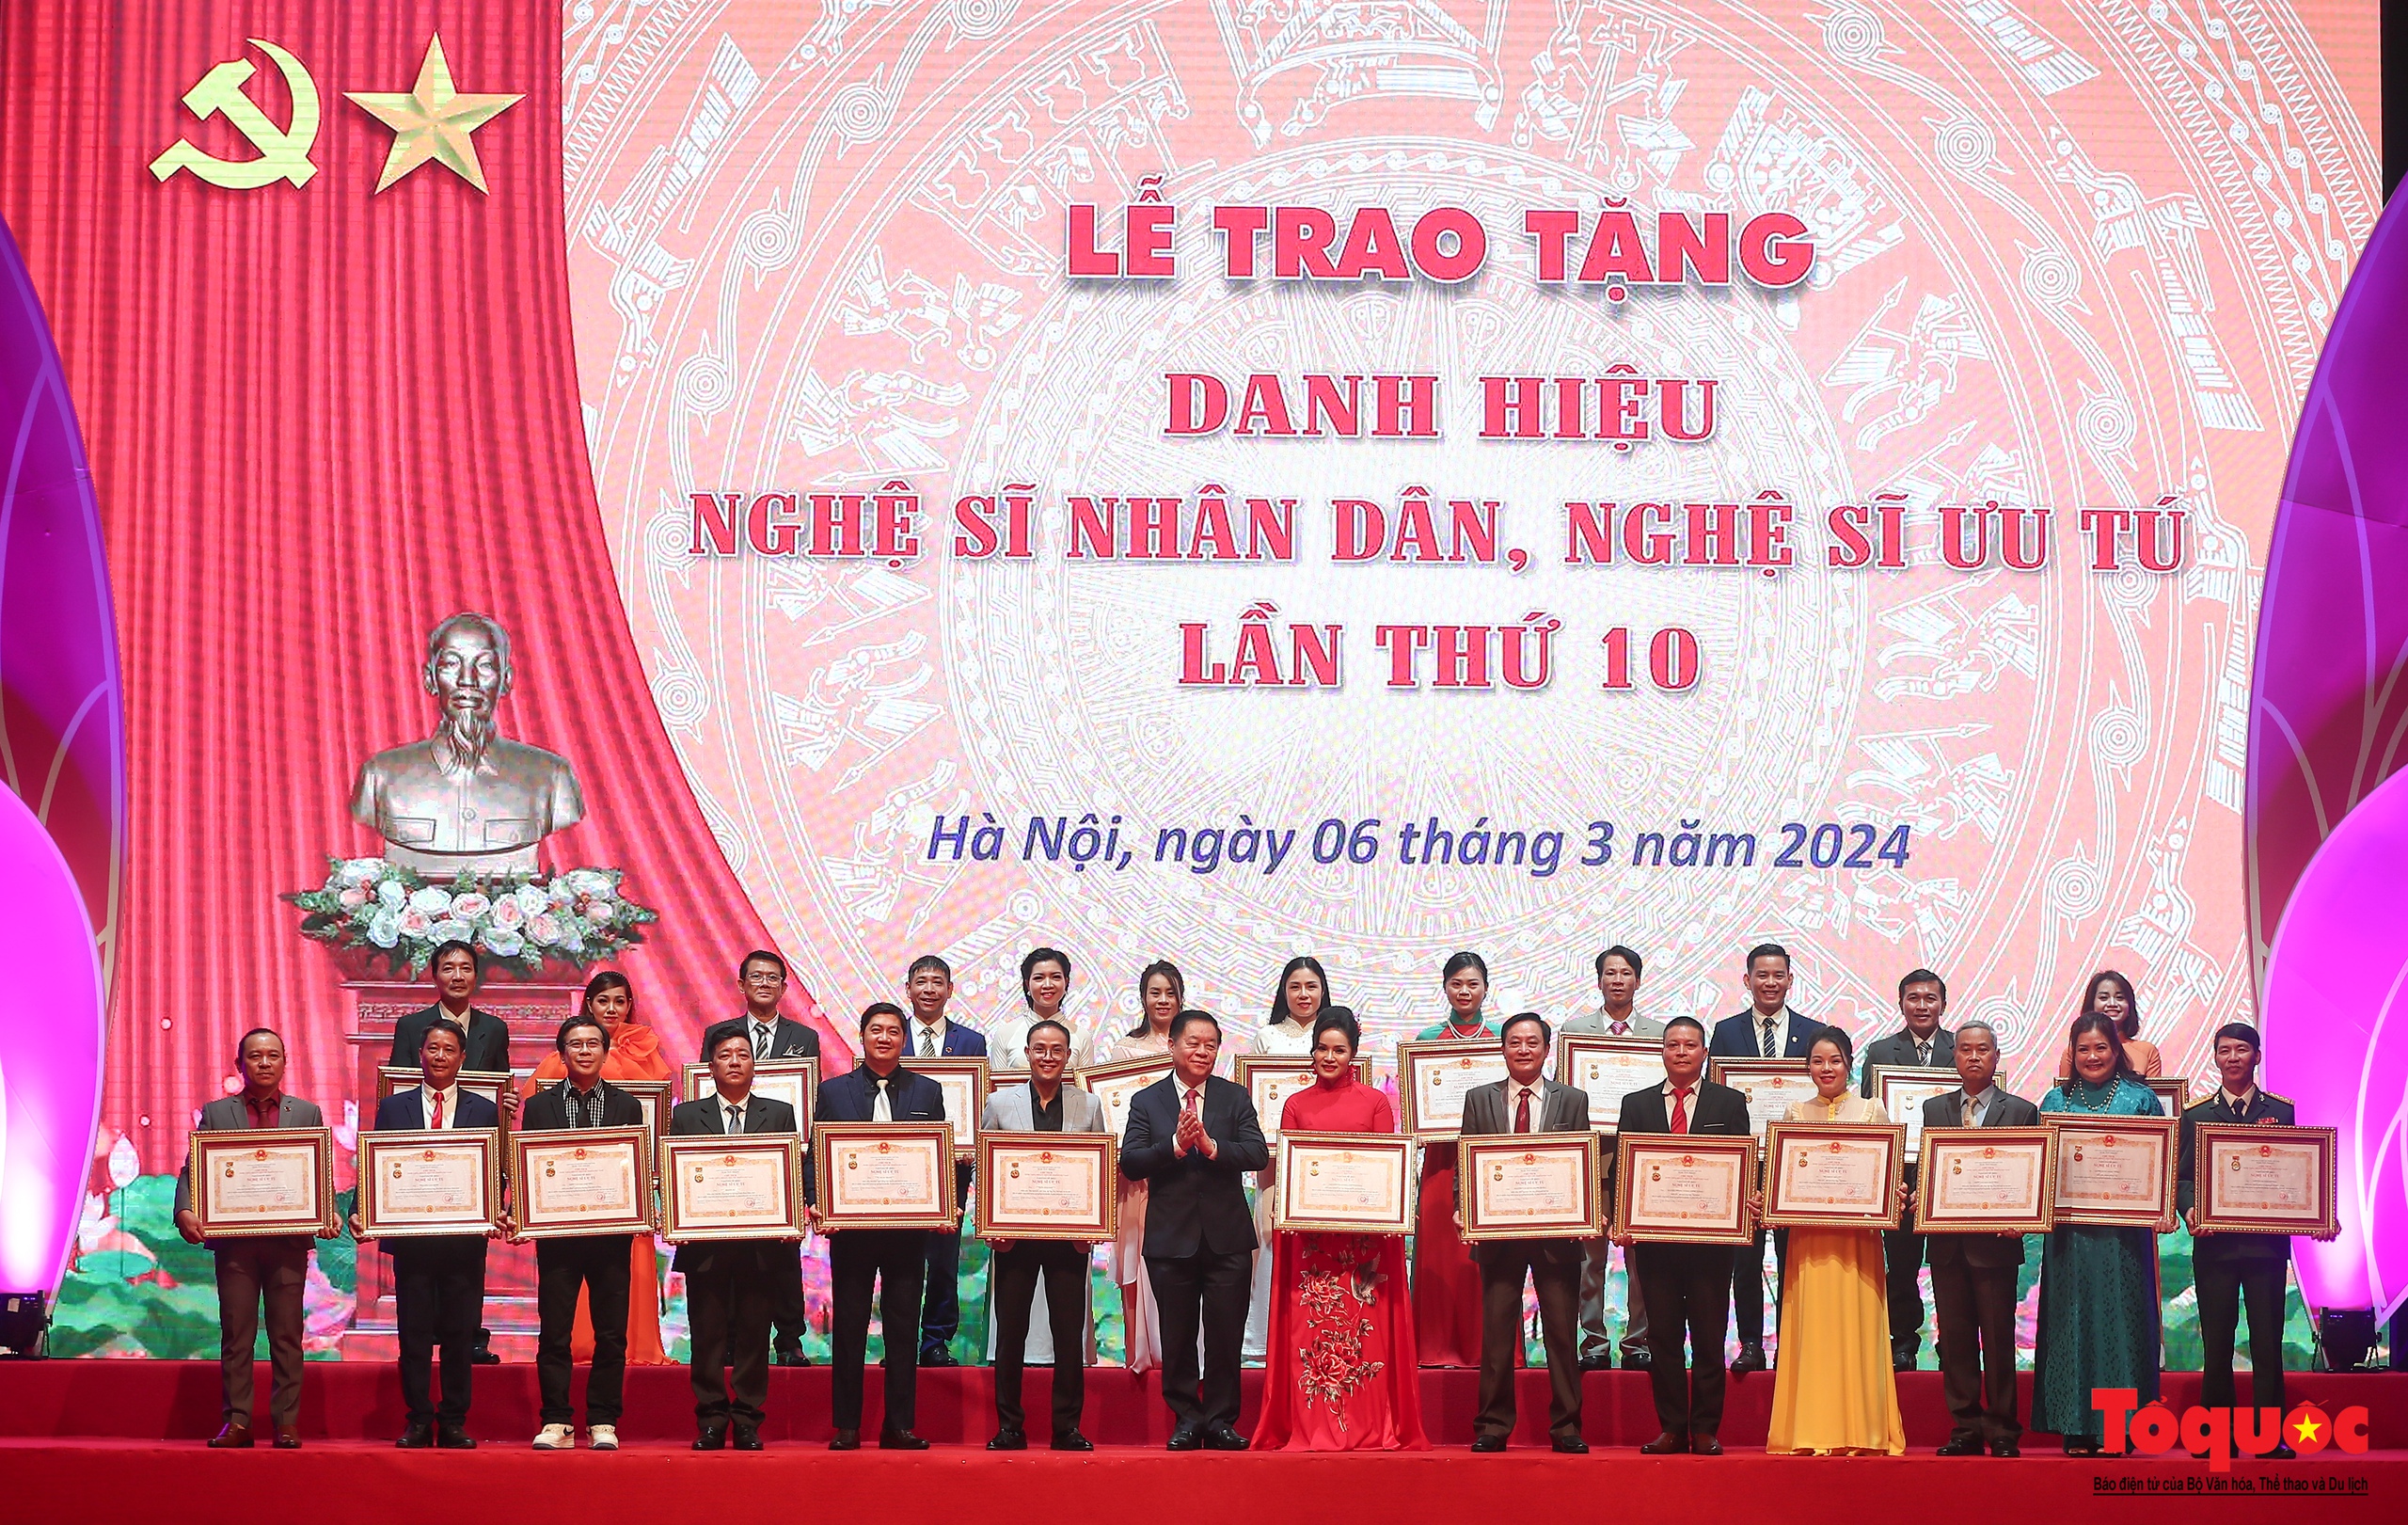 Toàn cảnh Lễ trao tặng danh hiệu Nghệ sĩ Nhân dân, Nghệ sĩ Ưu tú lần thứ 10 - Ảnh 17.